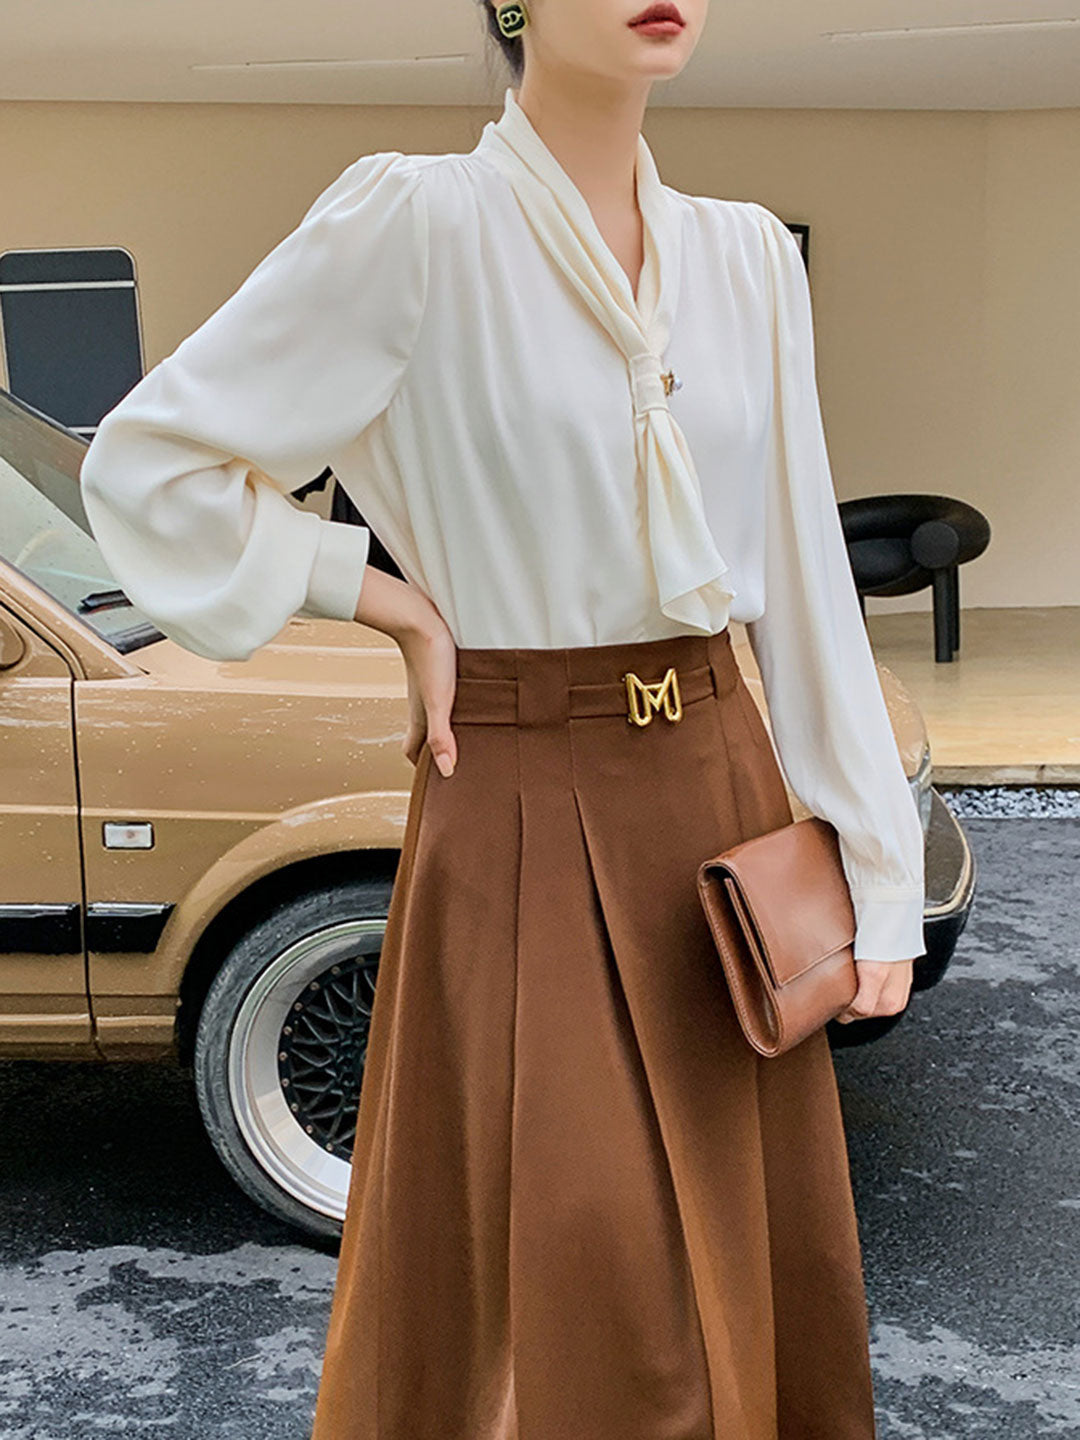 Gail Freda French Style Elegant Streamer Chiffon Shirt